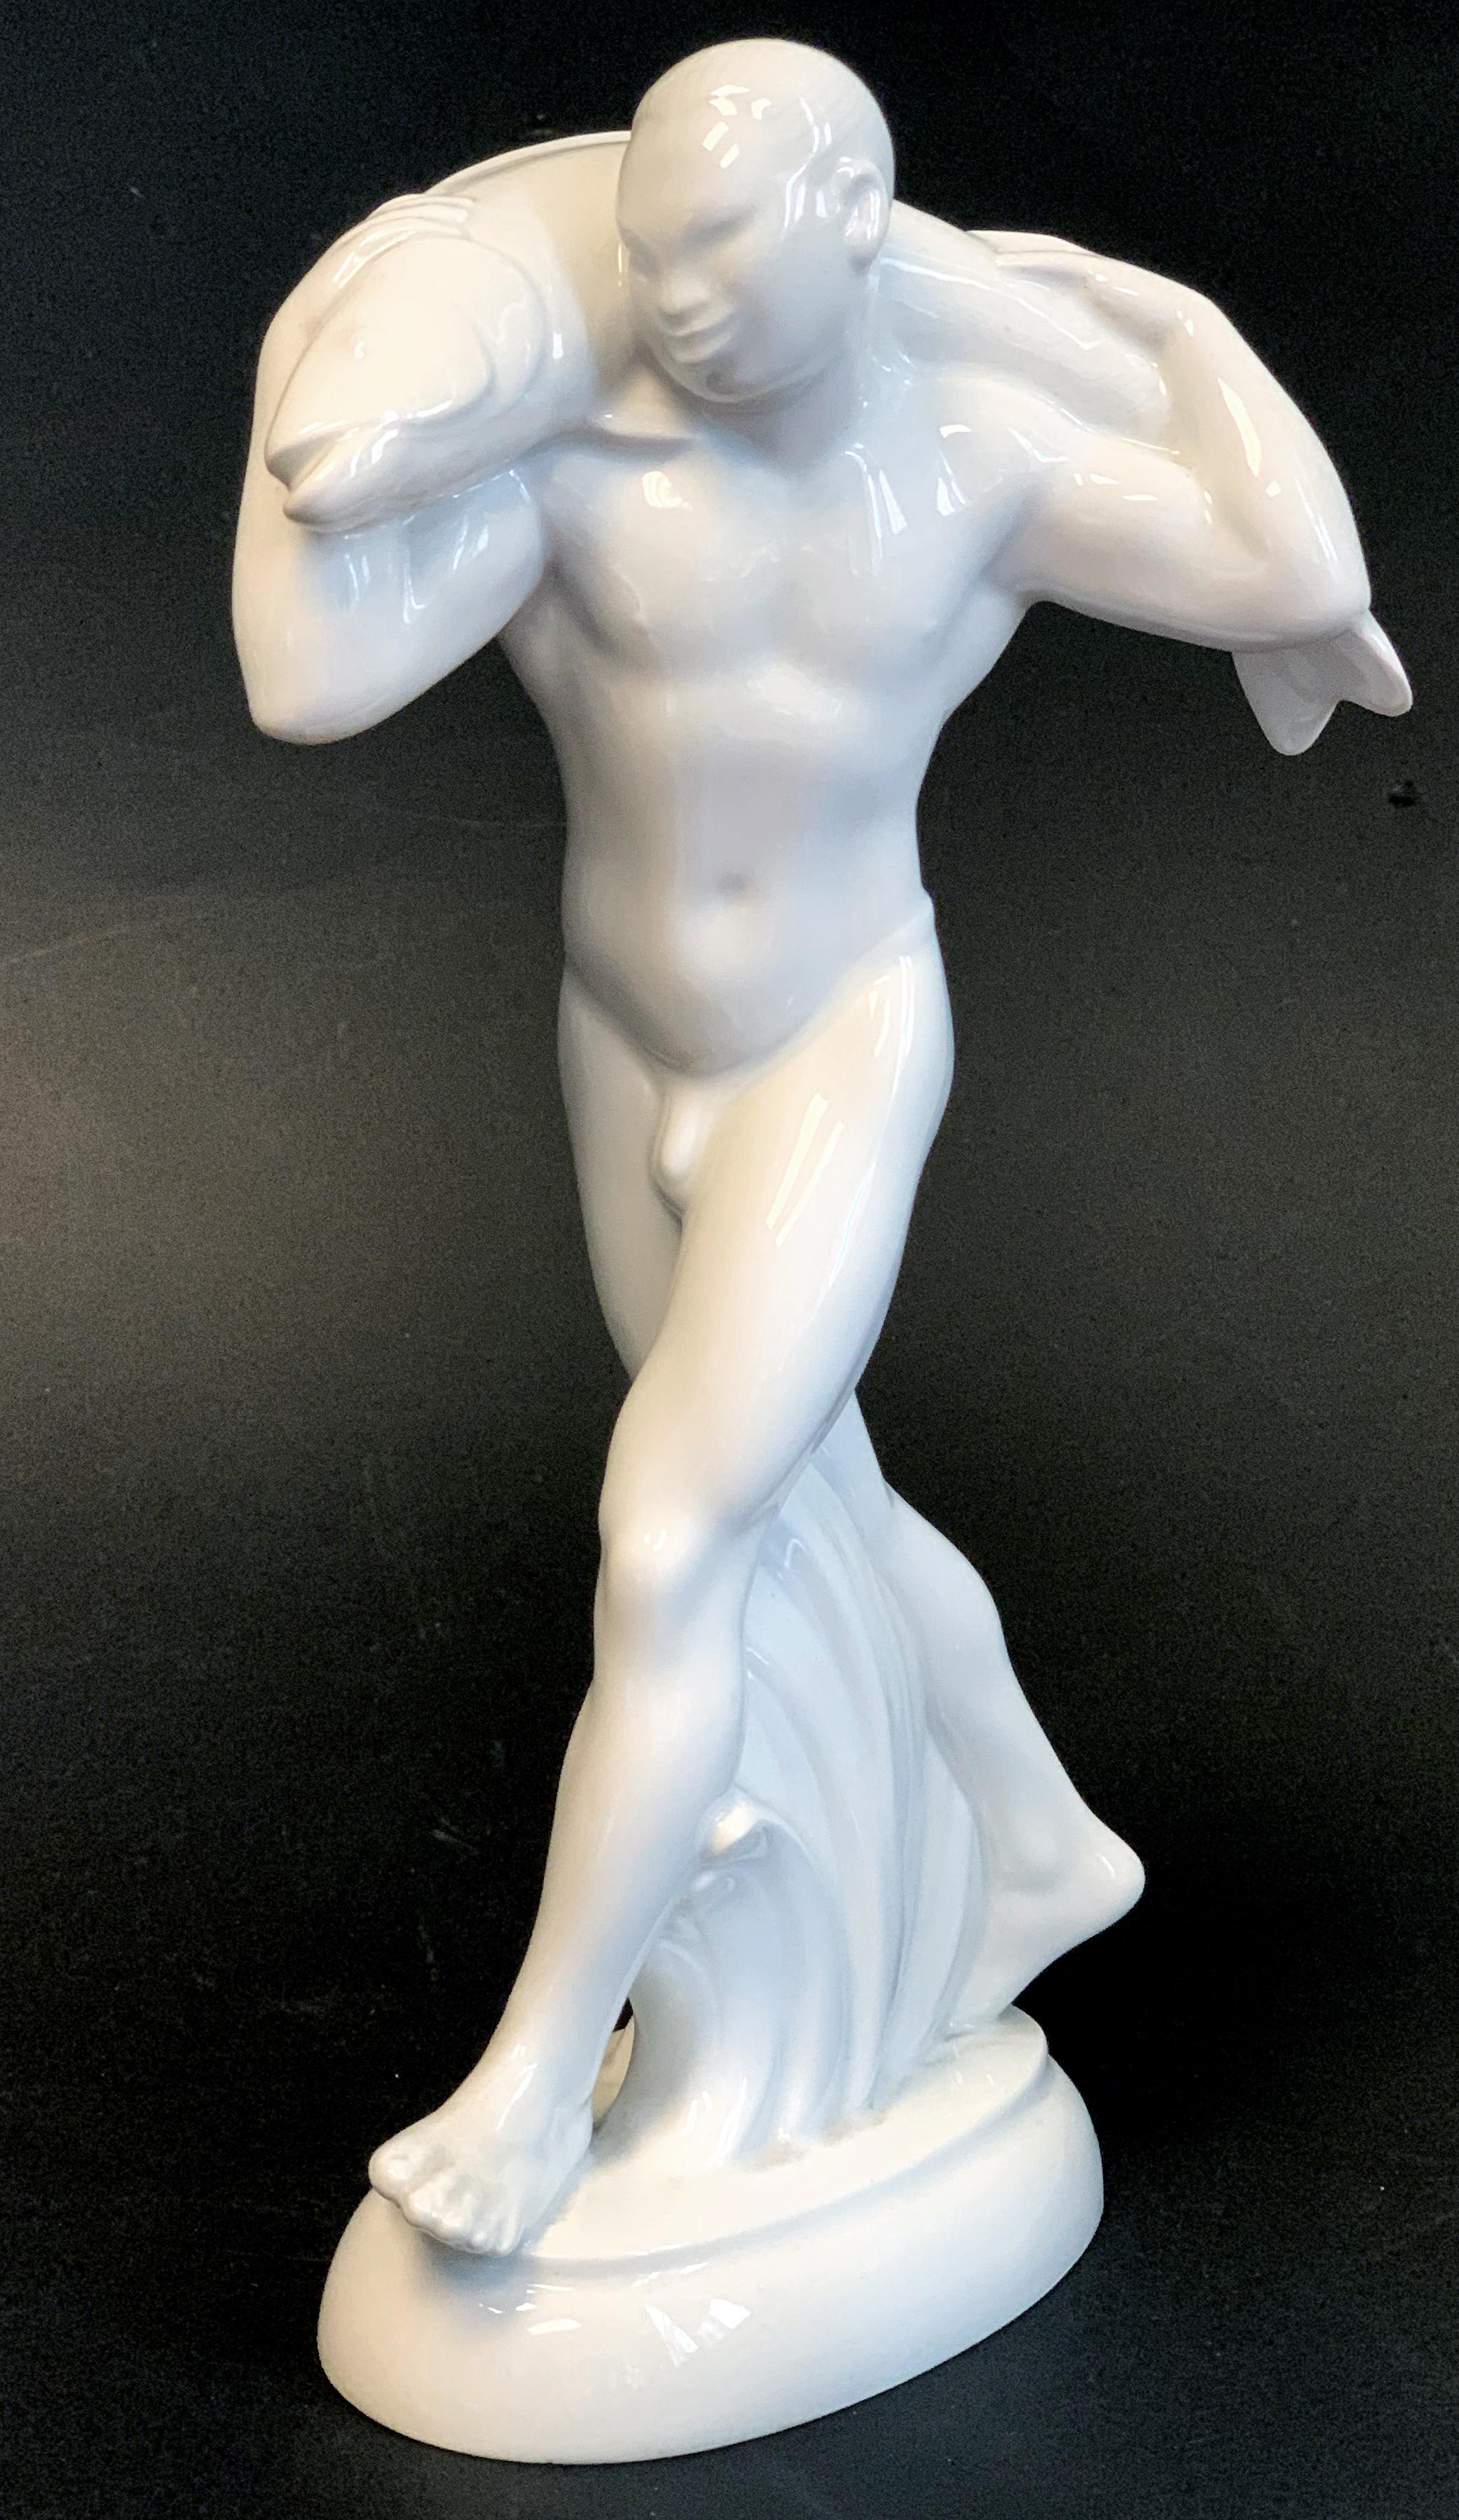 Rare et saisissante, cette sculpture en porcelaine représentant un personnage masculin japonais nu portant un poisson sur ses épaules a été réalisée par Adolf (ou Adolph) Amberg pour KPM en 1905, pour célébrer le mariage du prince héritier prussien